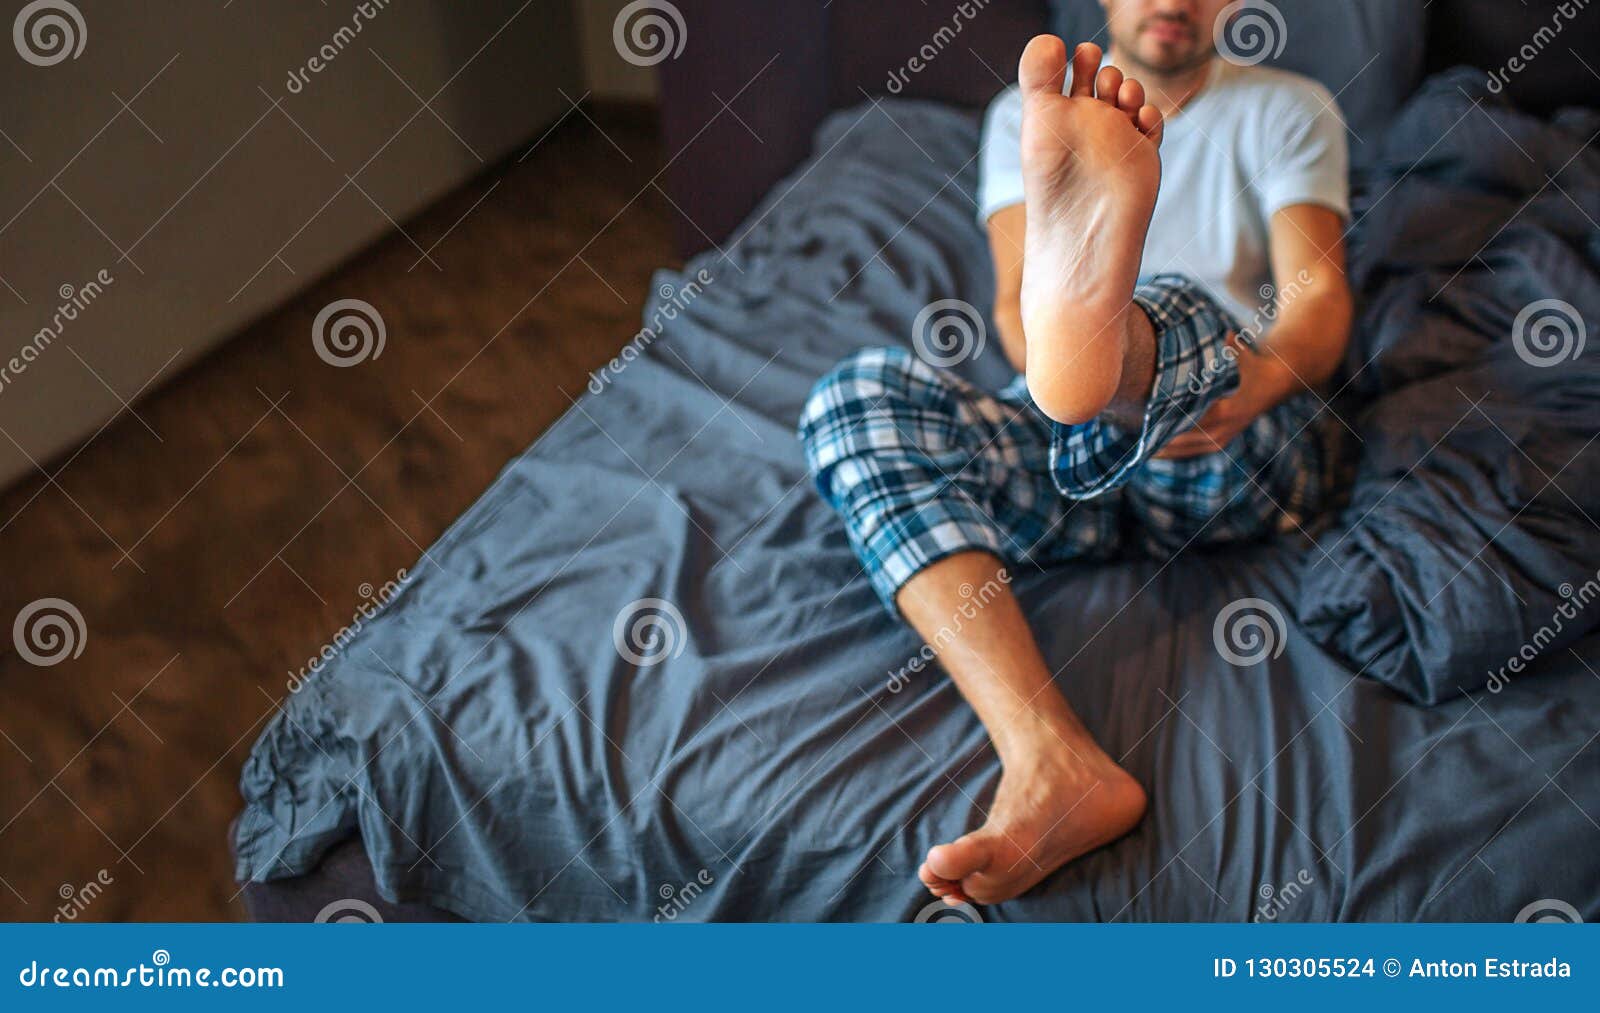 Мужчина показывает ногу. Мужские ноги на кровати. Мужские ноги в постели. Человек сидит на кровати. Нога за ногу мужчина.